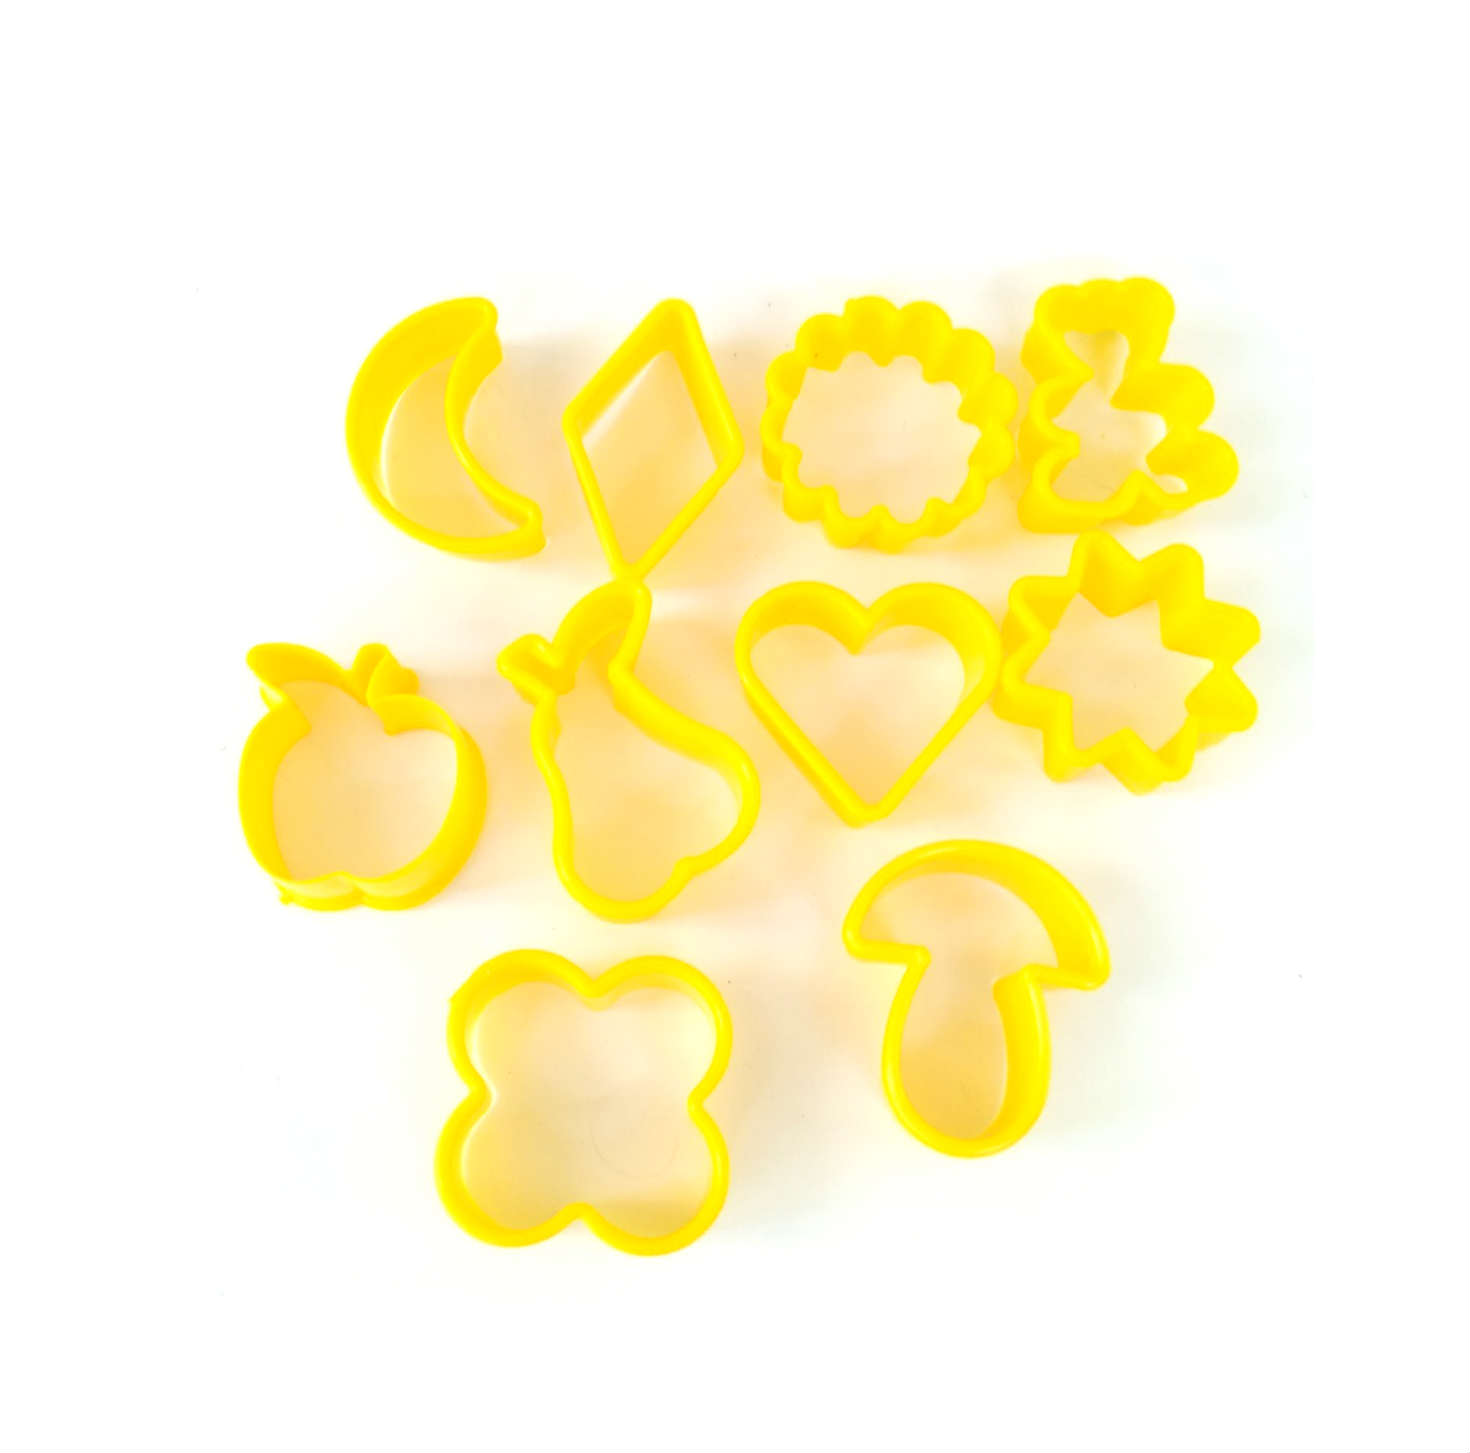 Набор форм для печенья пластиковых 10 шт Желтый Ytech